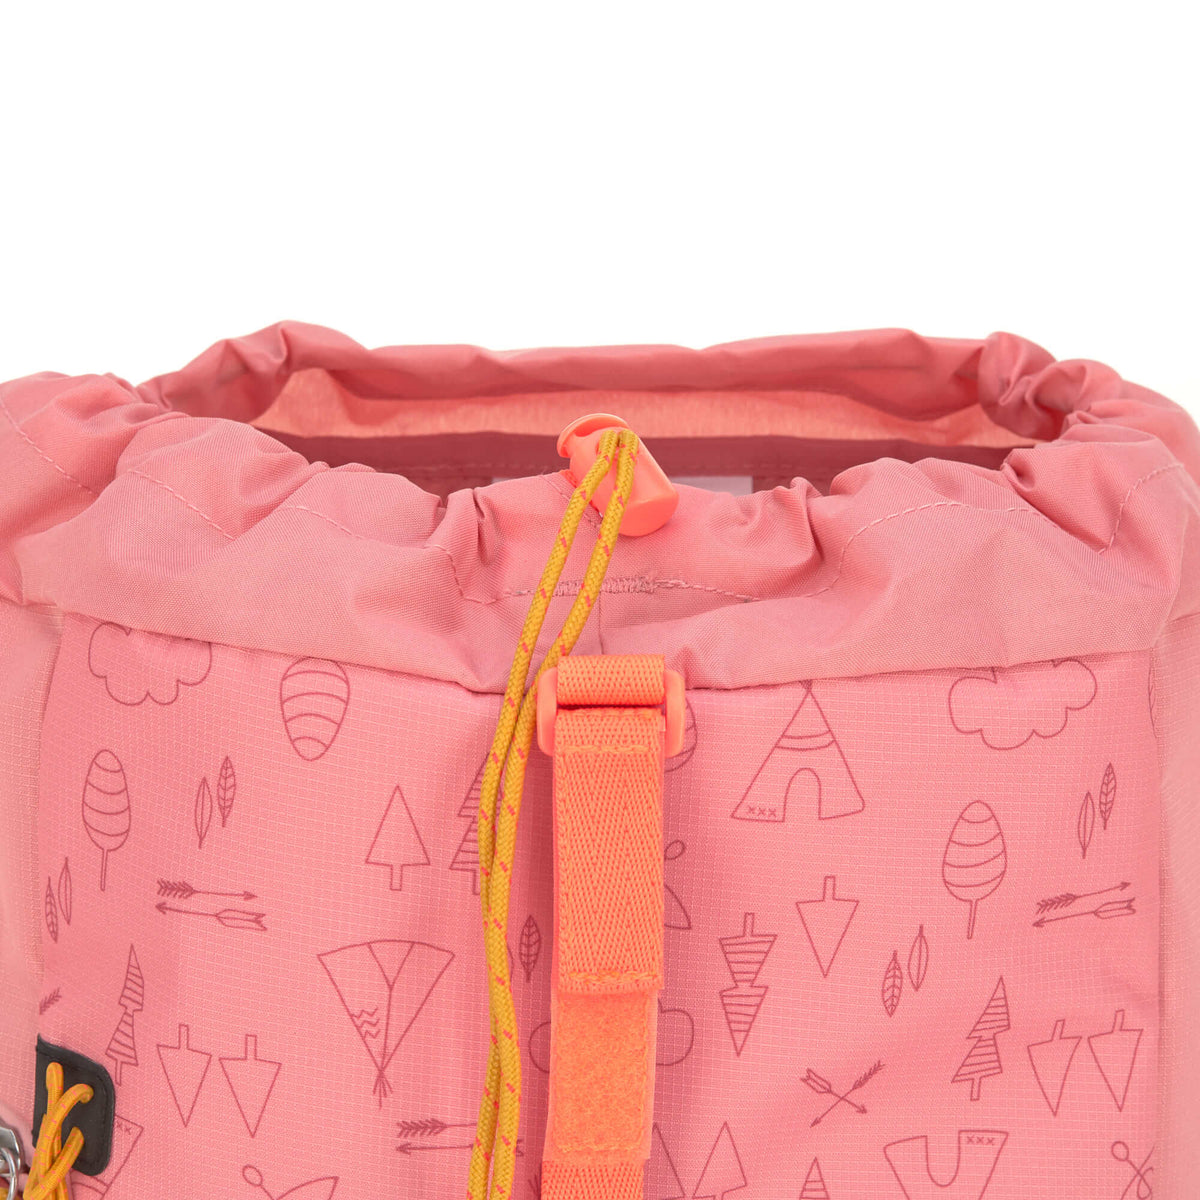 Lässig Kindergartenrucksack Outdoor mini Backpack Adventure rosa